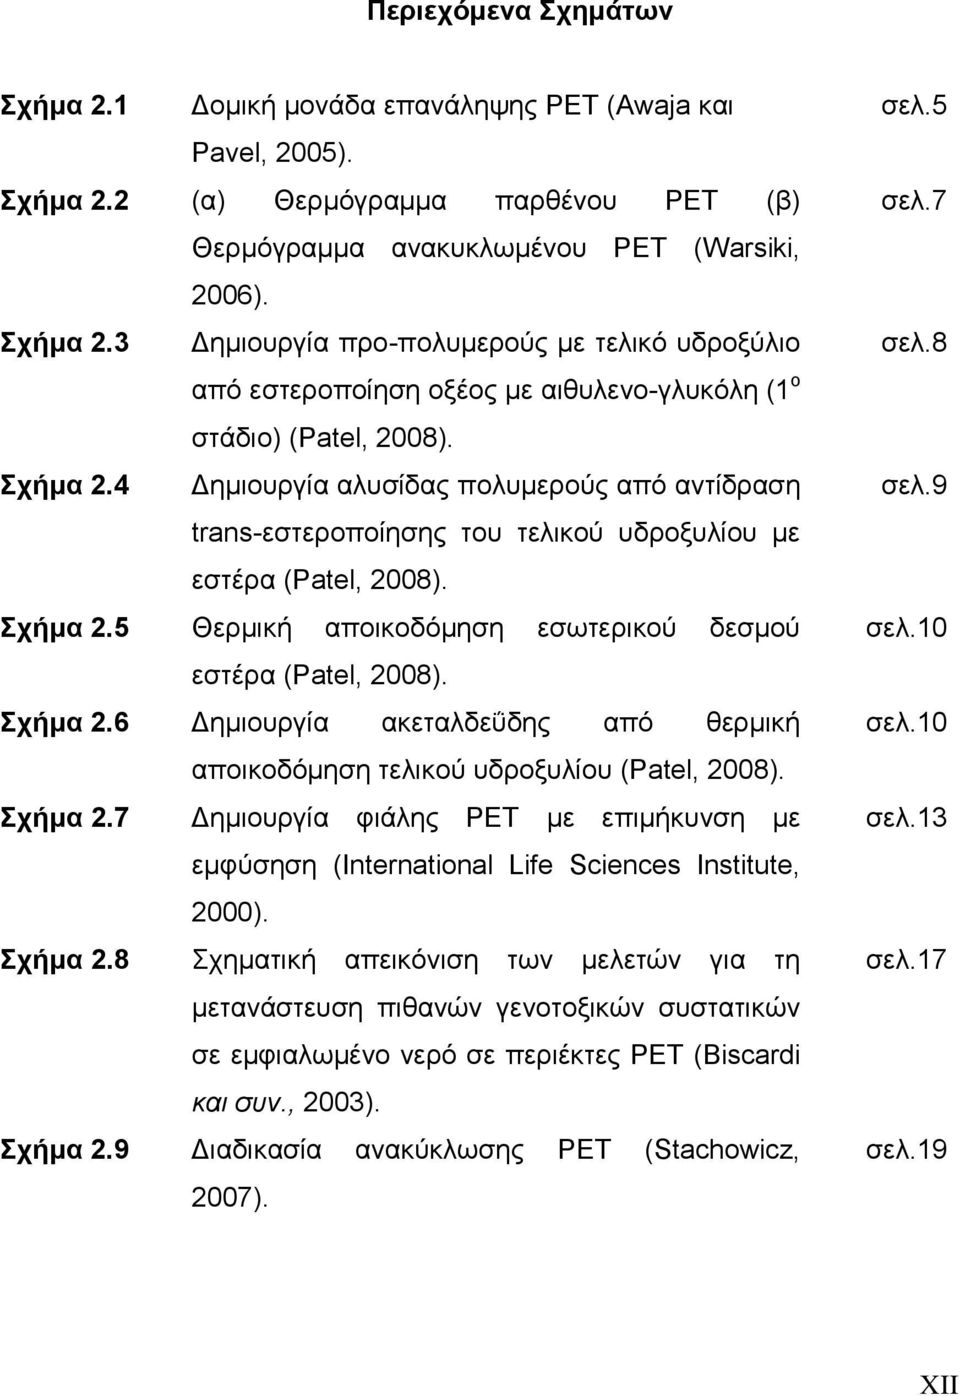 Σχήμα 2.6 Δημιουργία ακεταλδεΰδης από θερμική αποικοδόμηση τελικού υδροξυλίου (Patel, 2008). Σχήμα 2.7 Δημιουργία φιάλης PET με επιμήκυνση με εμφύσηση (International Life Sciences Institute, 2000).